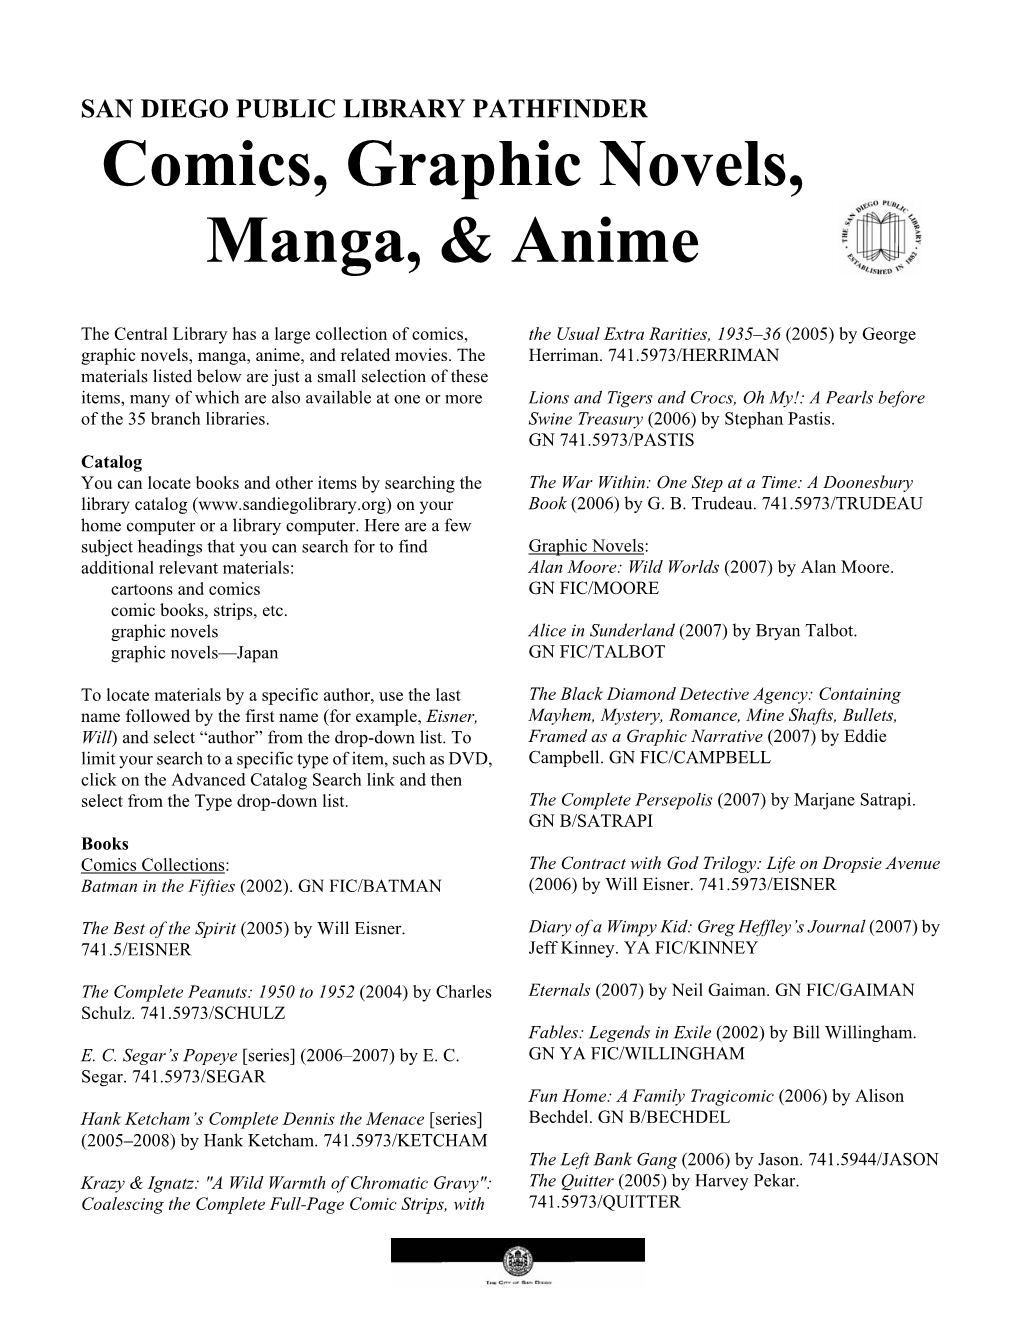 Comics, Graphic Novels, Manga, & Anime